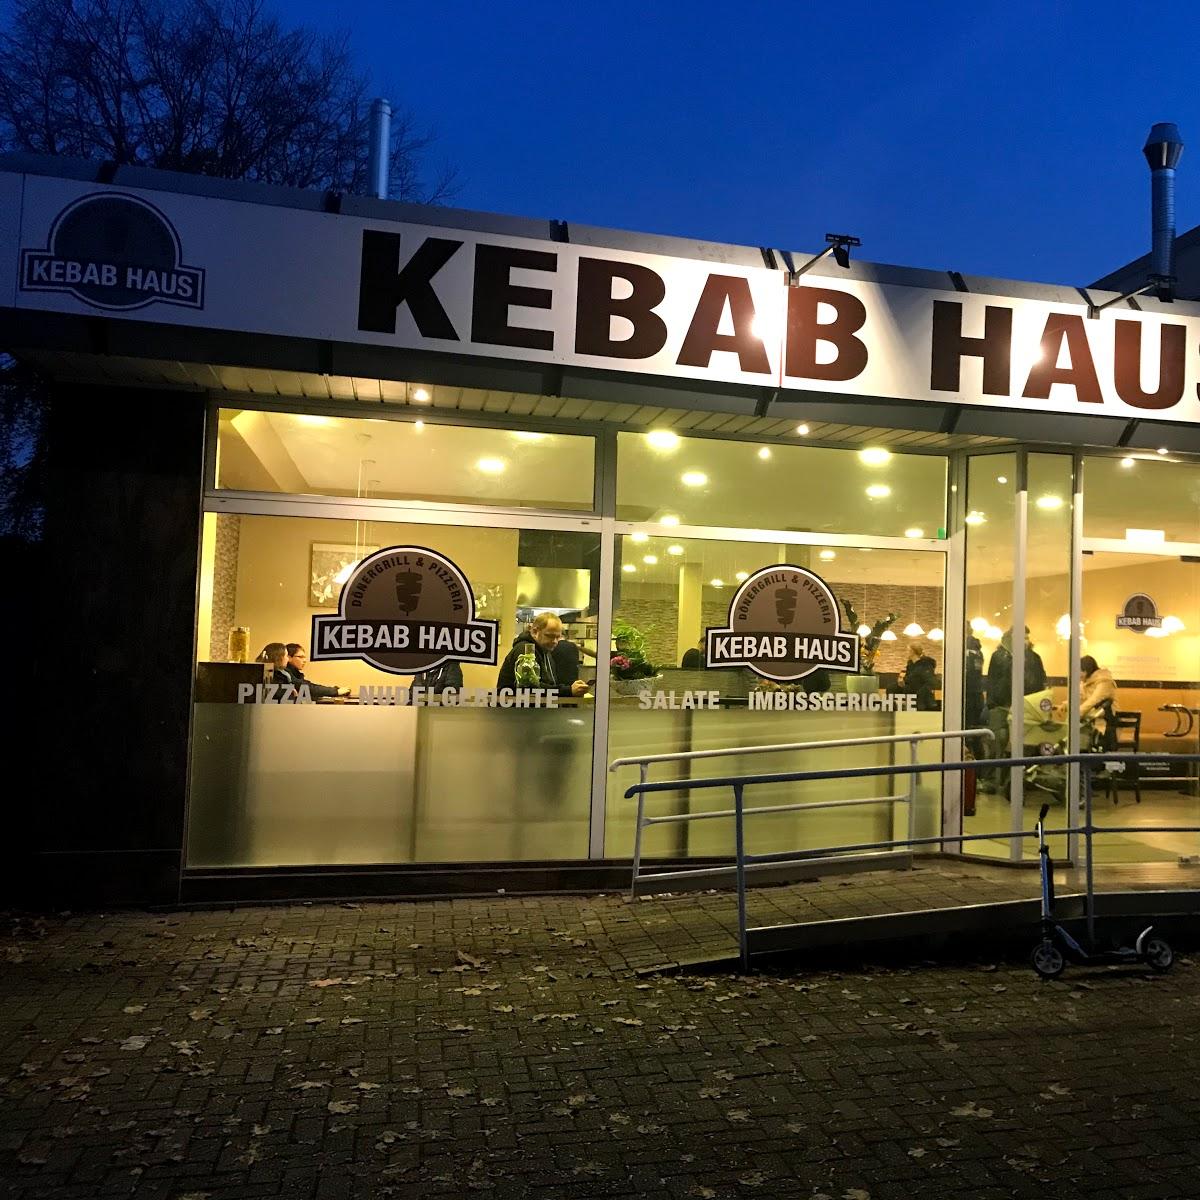 Restaurant "Kebab Haus - Dönergrill & Pizzeria" in Vreden